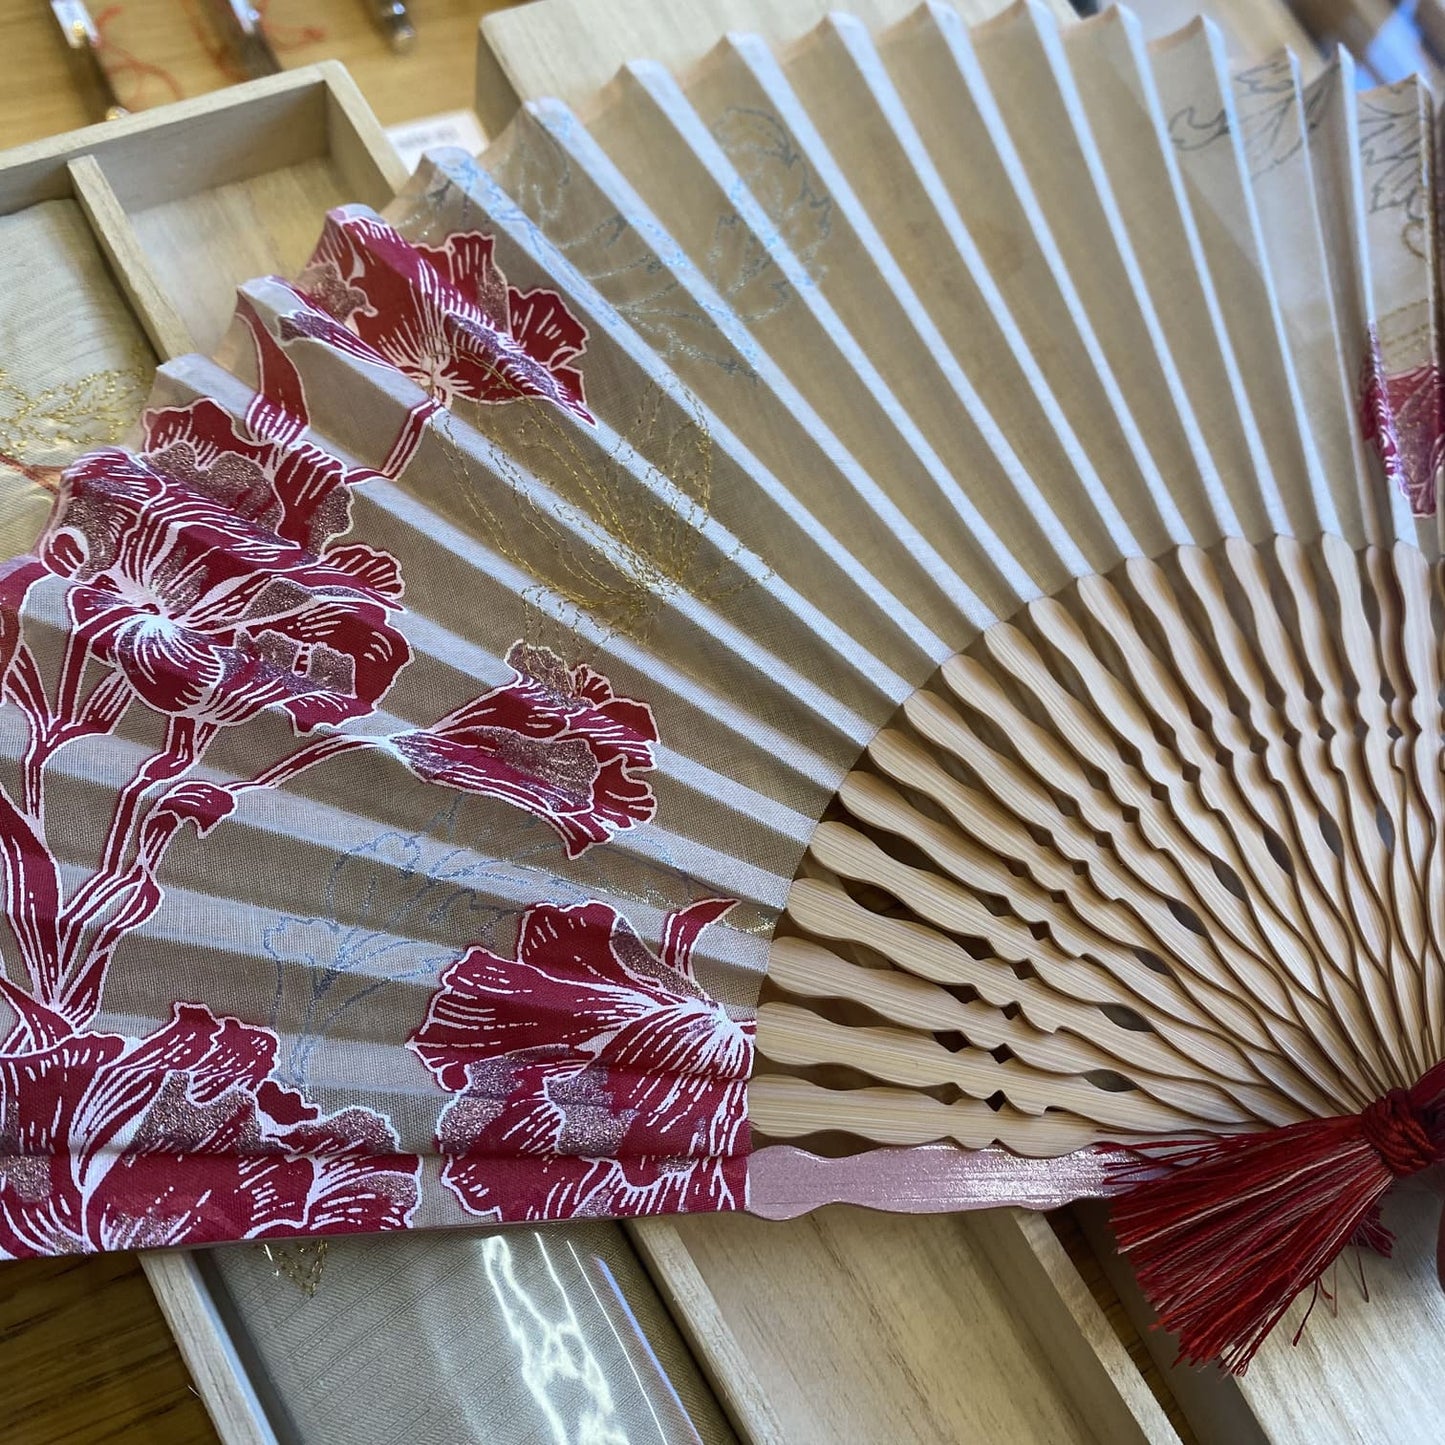 Folding hand fan made in Kyoto